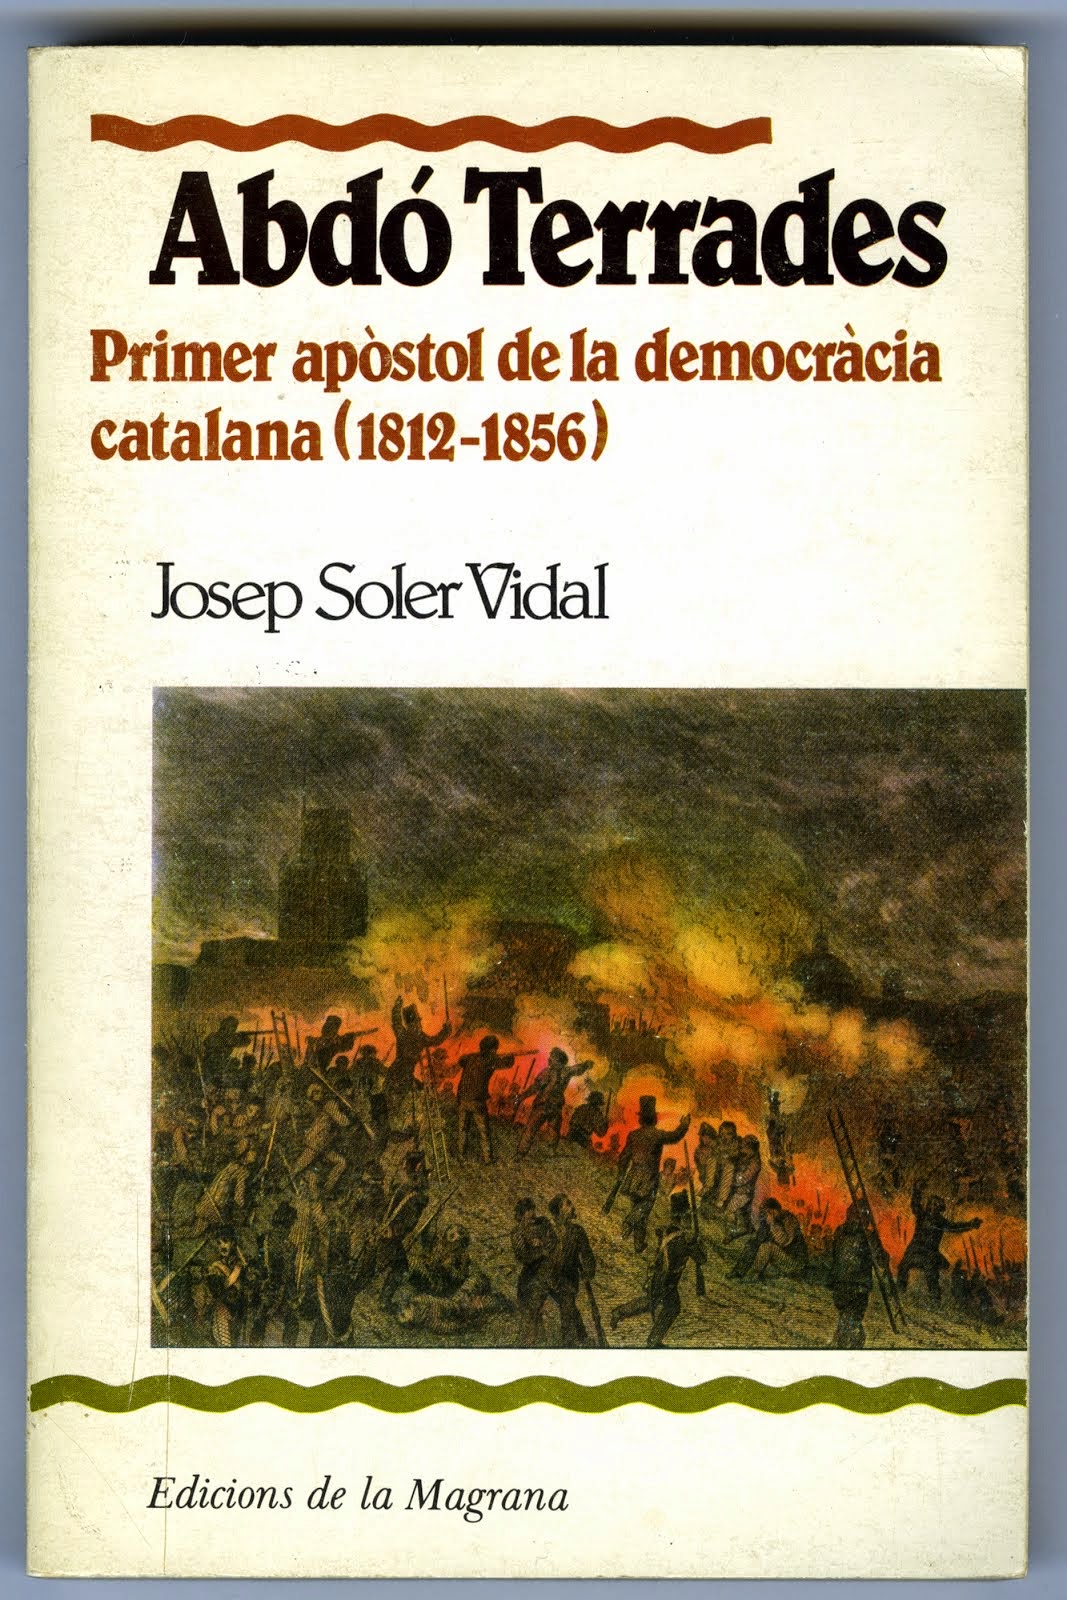 Abdó Terrades, Primer apòstol de la democràcia catalana 1812-1856"